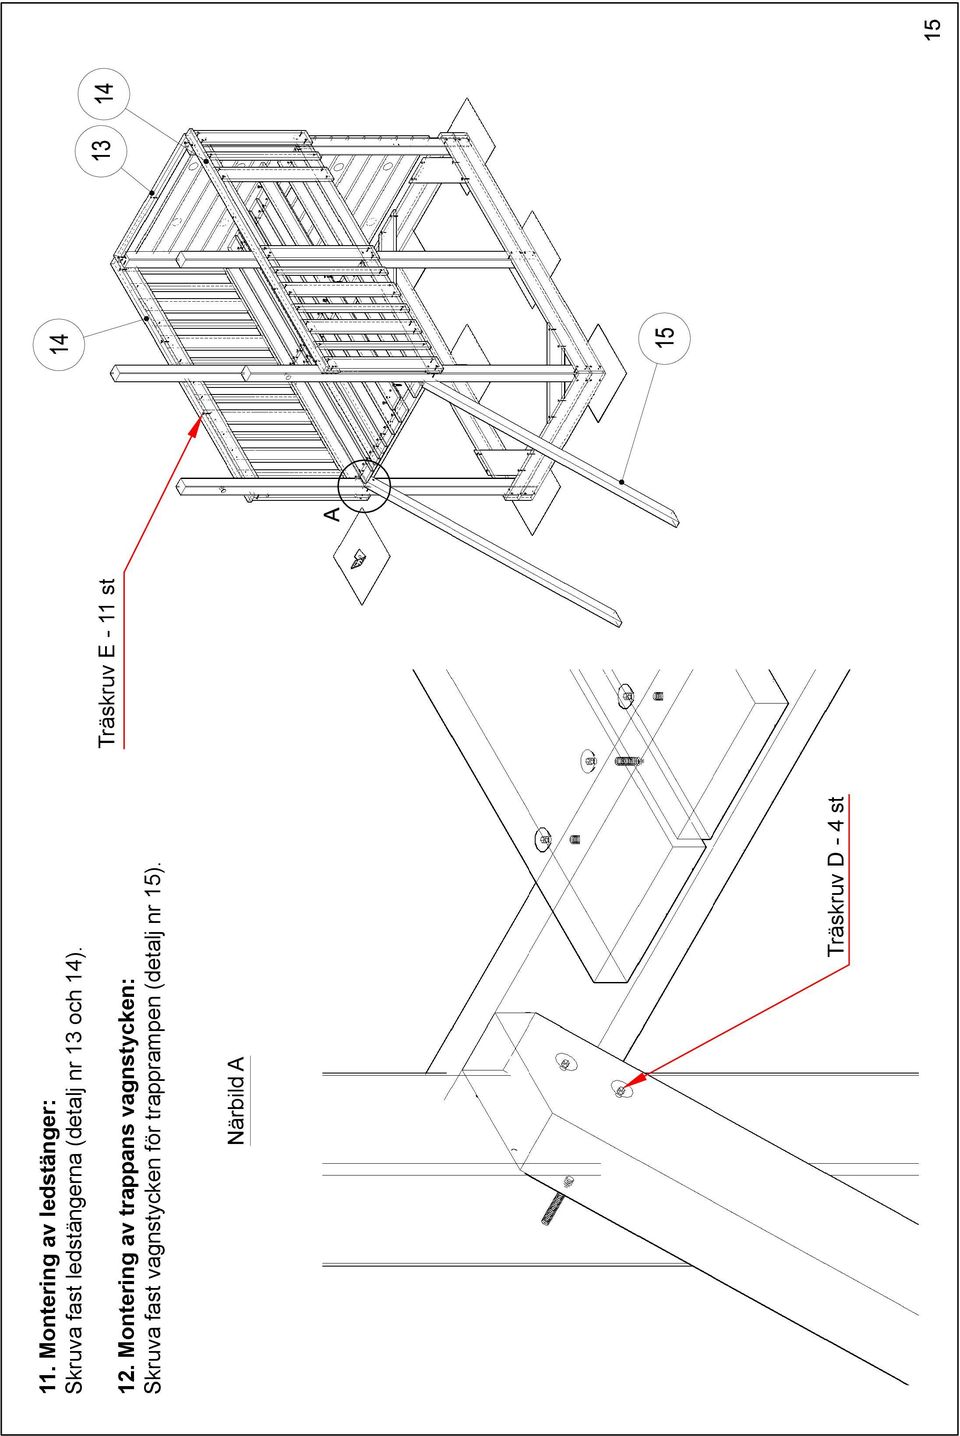 Montering av trappans vagnstycken: Skruva fast